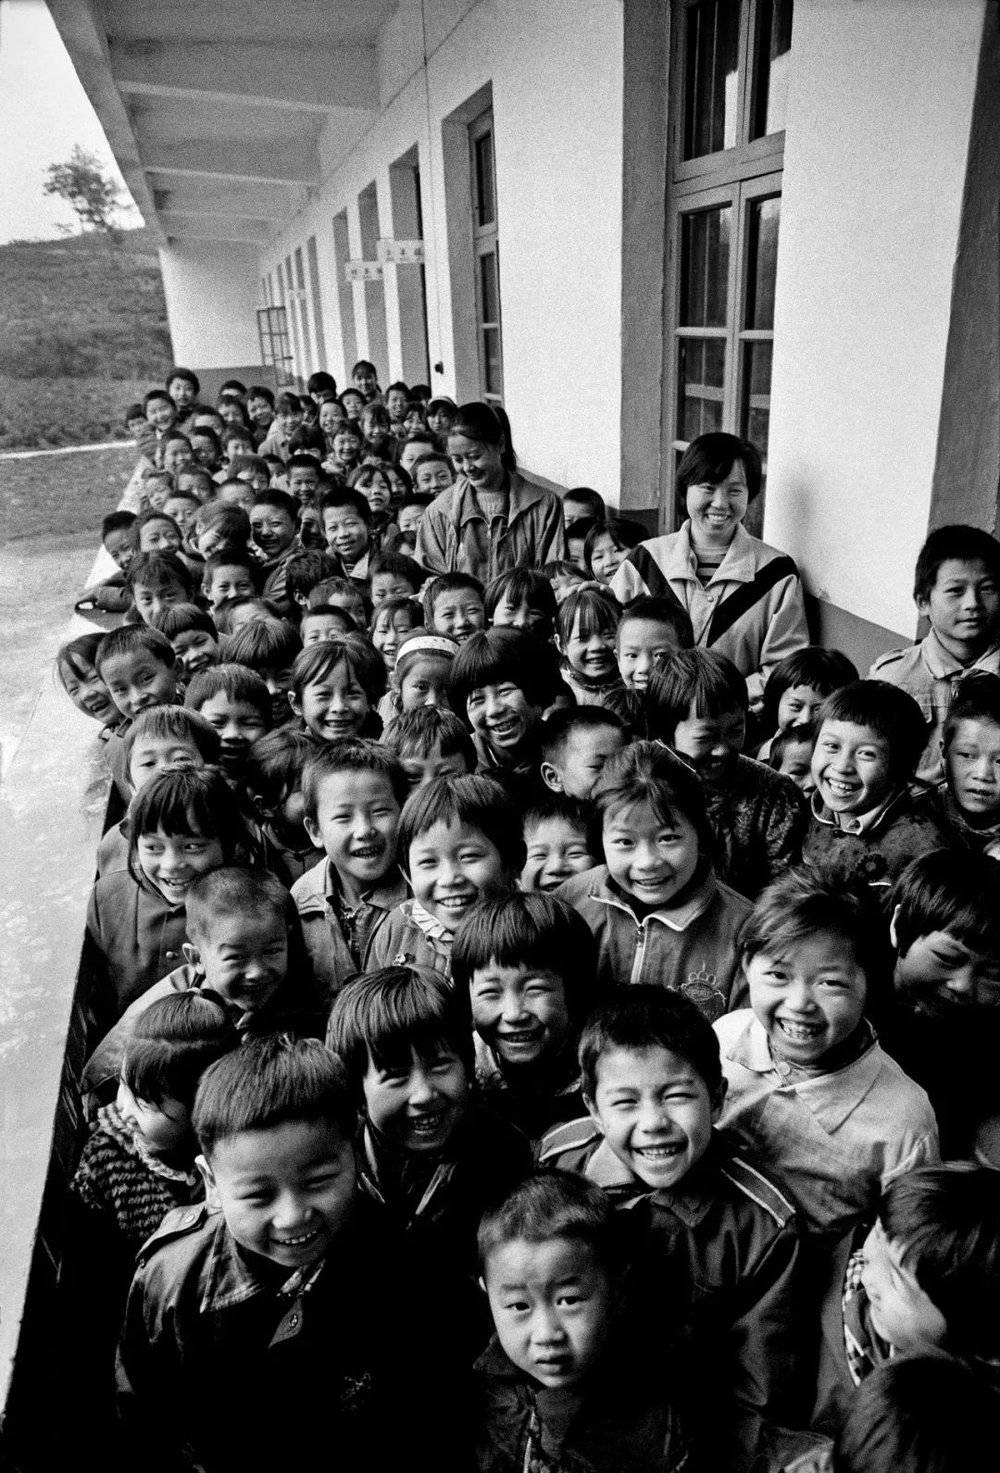 加拿大华人王华瑞老先生在报纸上见到红安县七里坪镇周七家小学的报道，捐资42万港元，建了一所现代化学校，十里八乡的孩子们都来此上学。1993年10月， 解海龙再次来到周七家小学，记录下师生们的开心一刻。摄影／解海龙